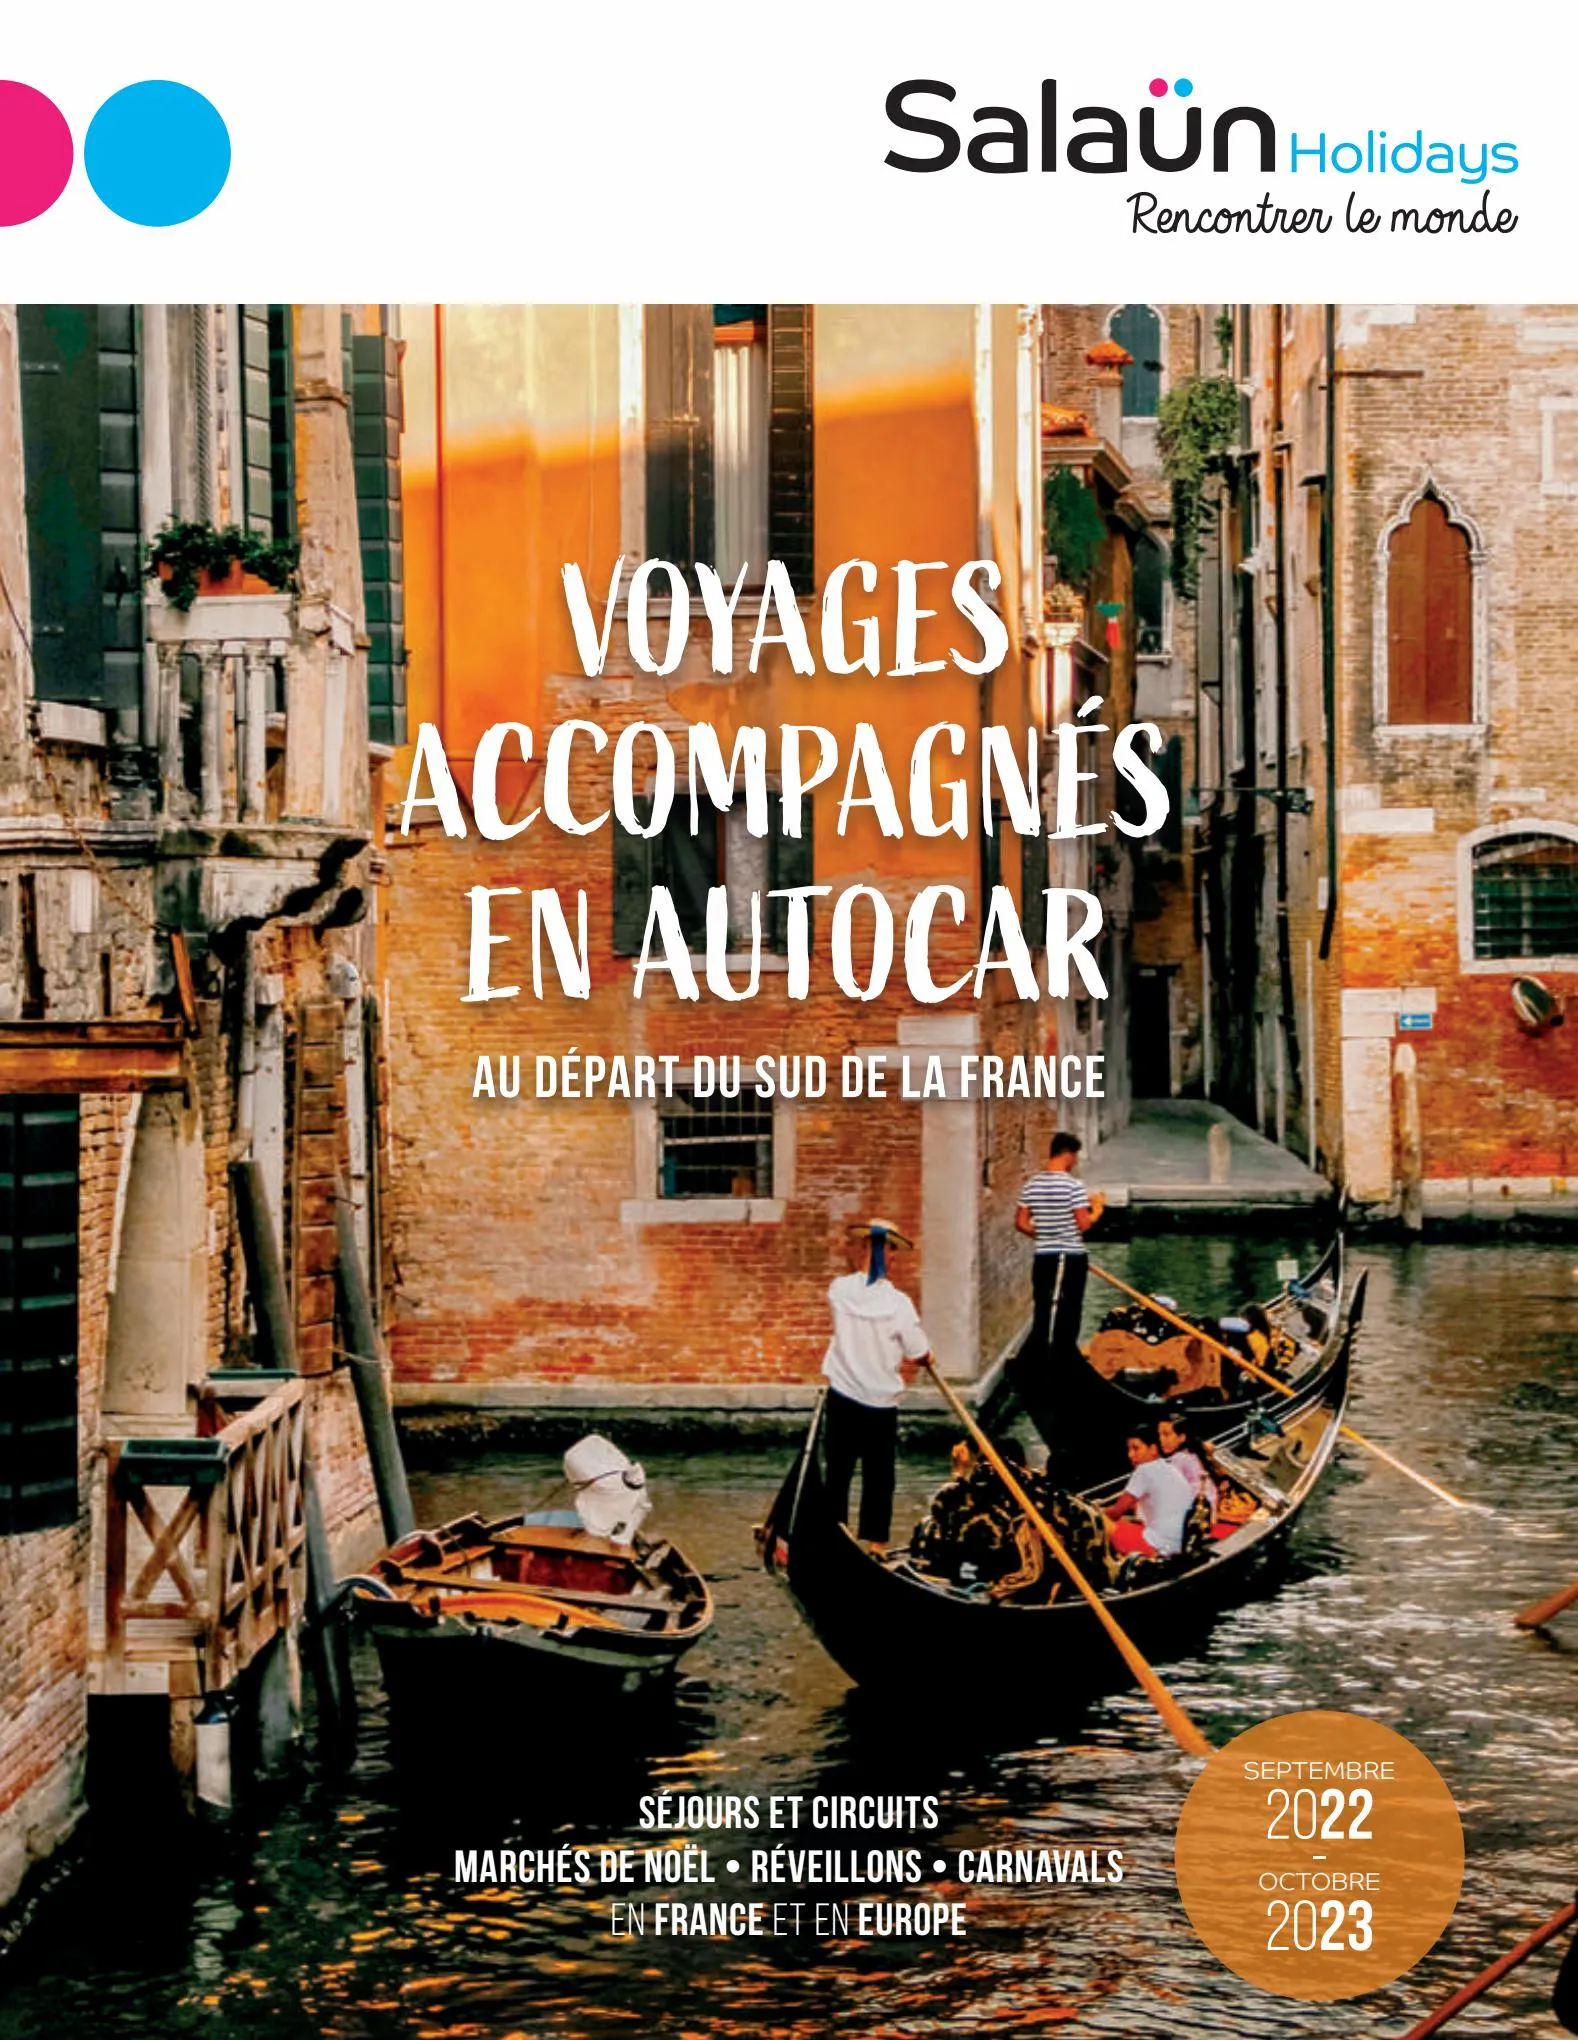 Catalogue Voyages accompagnés en autocar 2022-2023 , page 00001